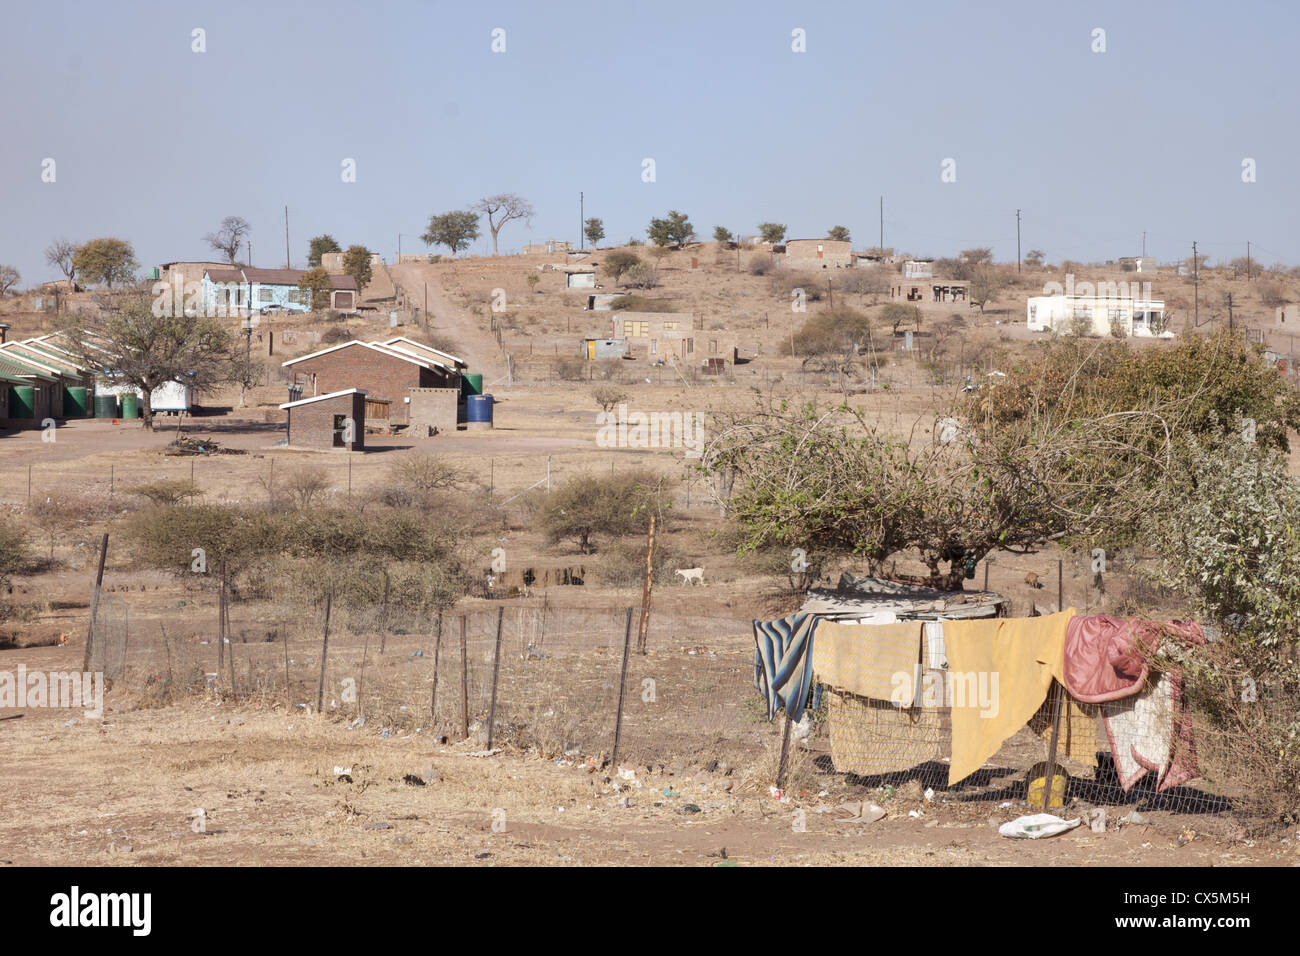 Un canton rural village en Afrique du Sud. La province du Limpopo Banque D'Images